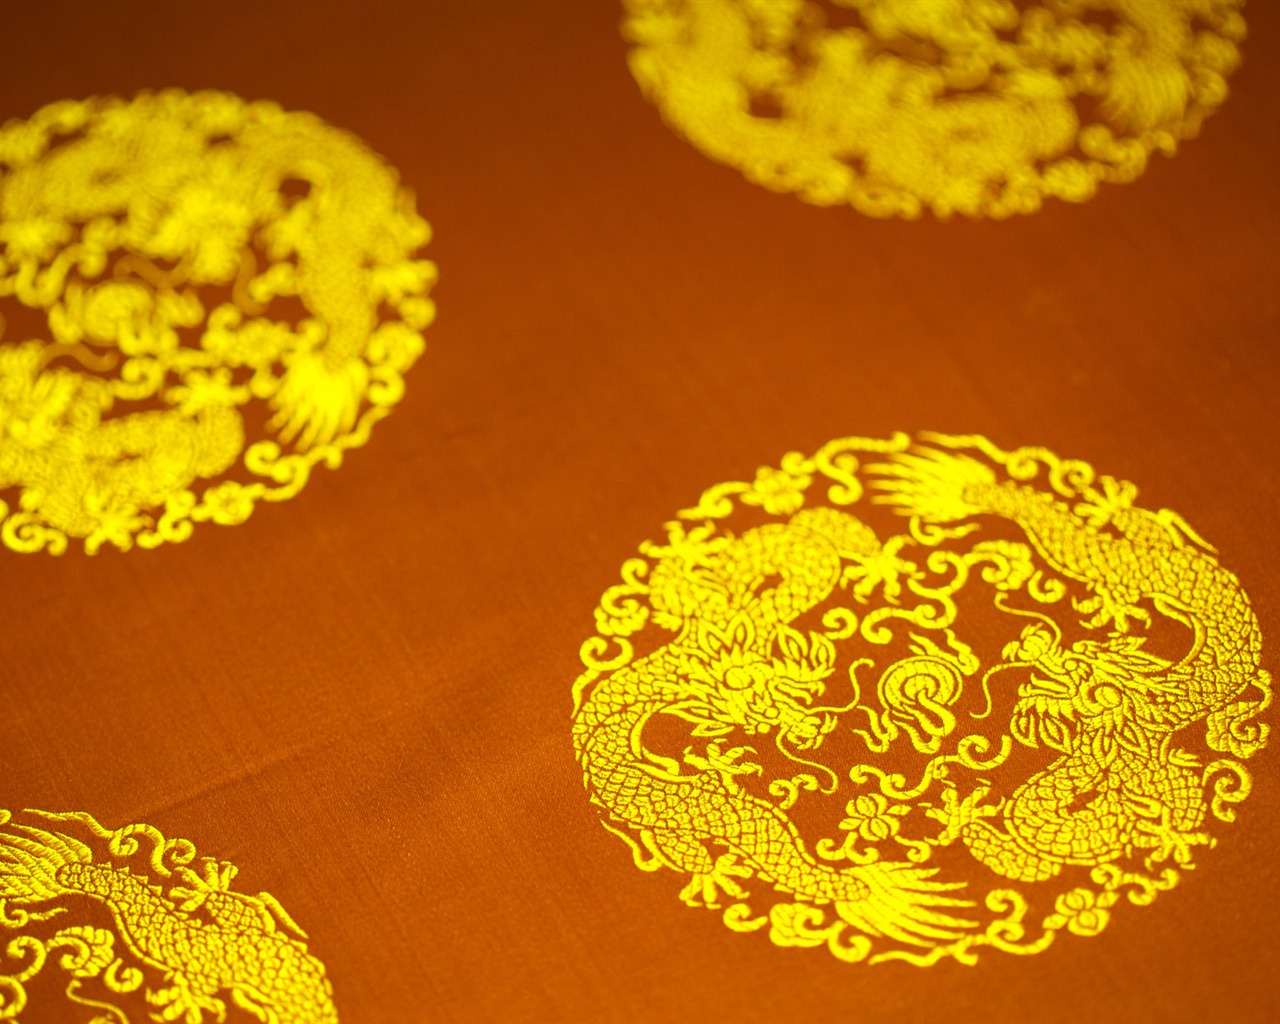 China Wind exquisite Stickereien Wallpaper #11 - 1280x1024